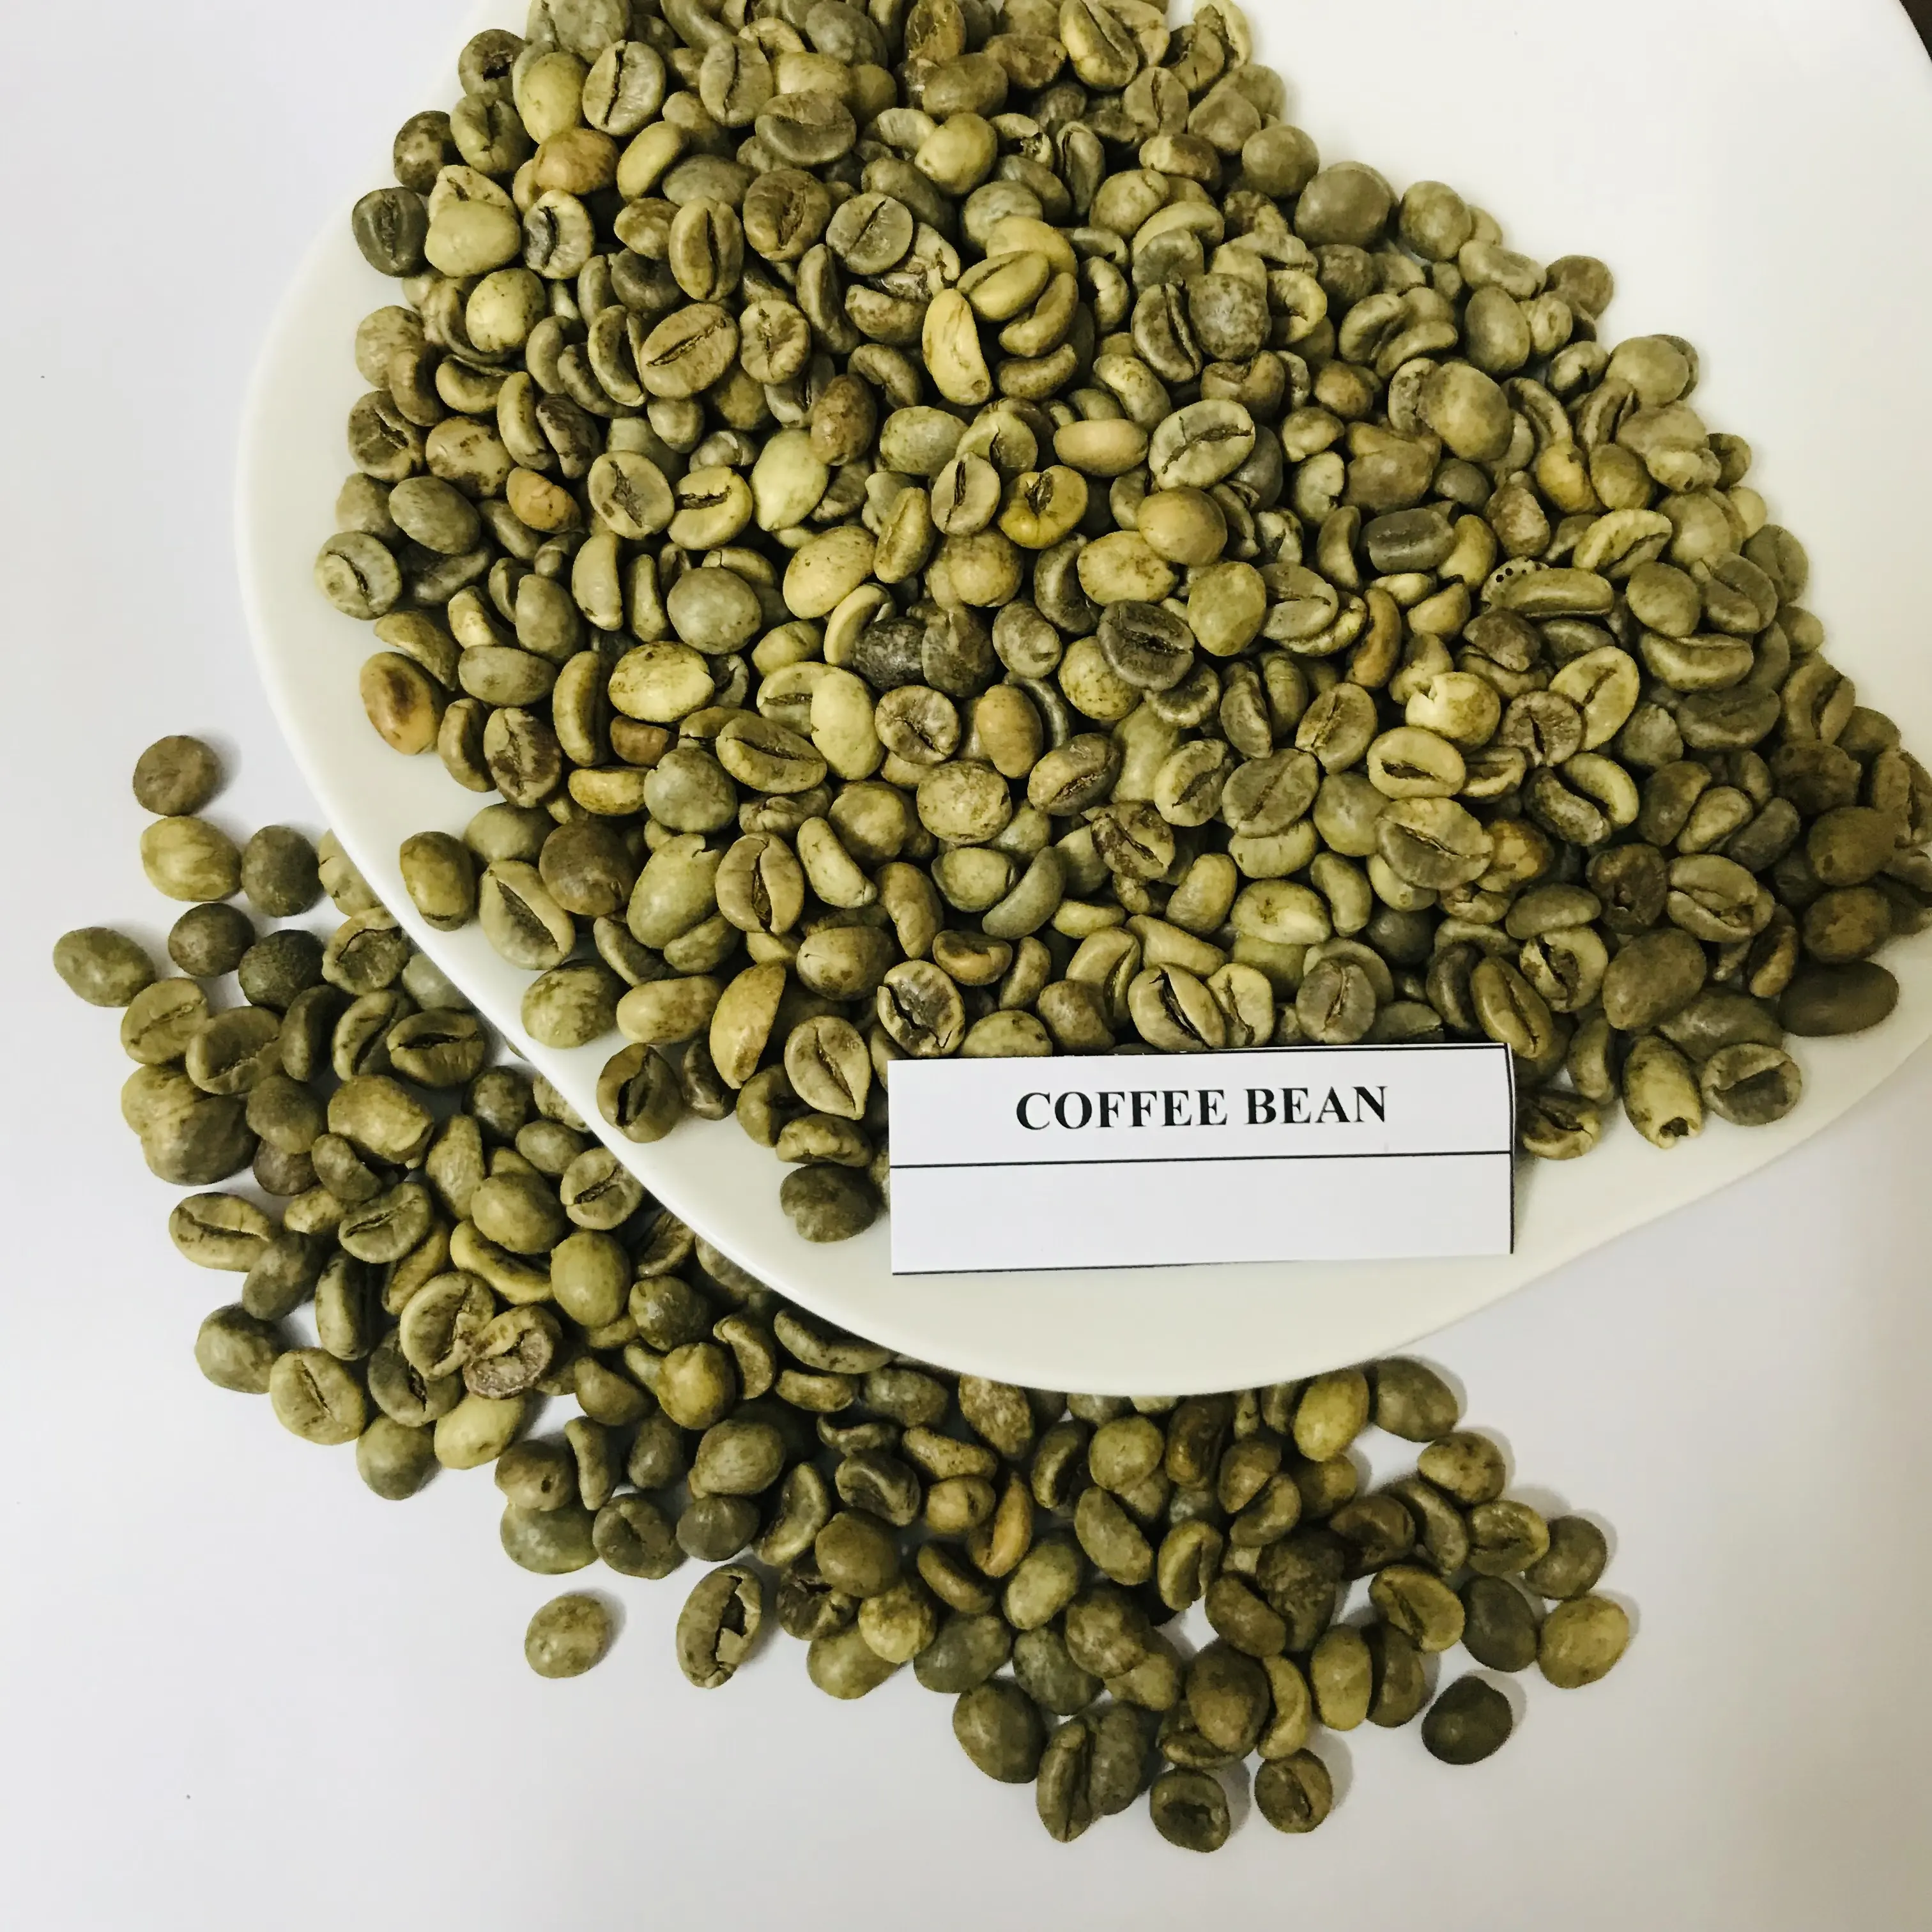 КОФЕ ROBUSTA вьетнамский/кофейные зерна Арабика/100% натуральные зеленые кофейные зерна высокого качества по лучшей цене + 84 326055616